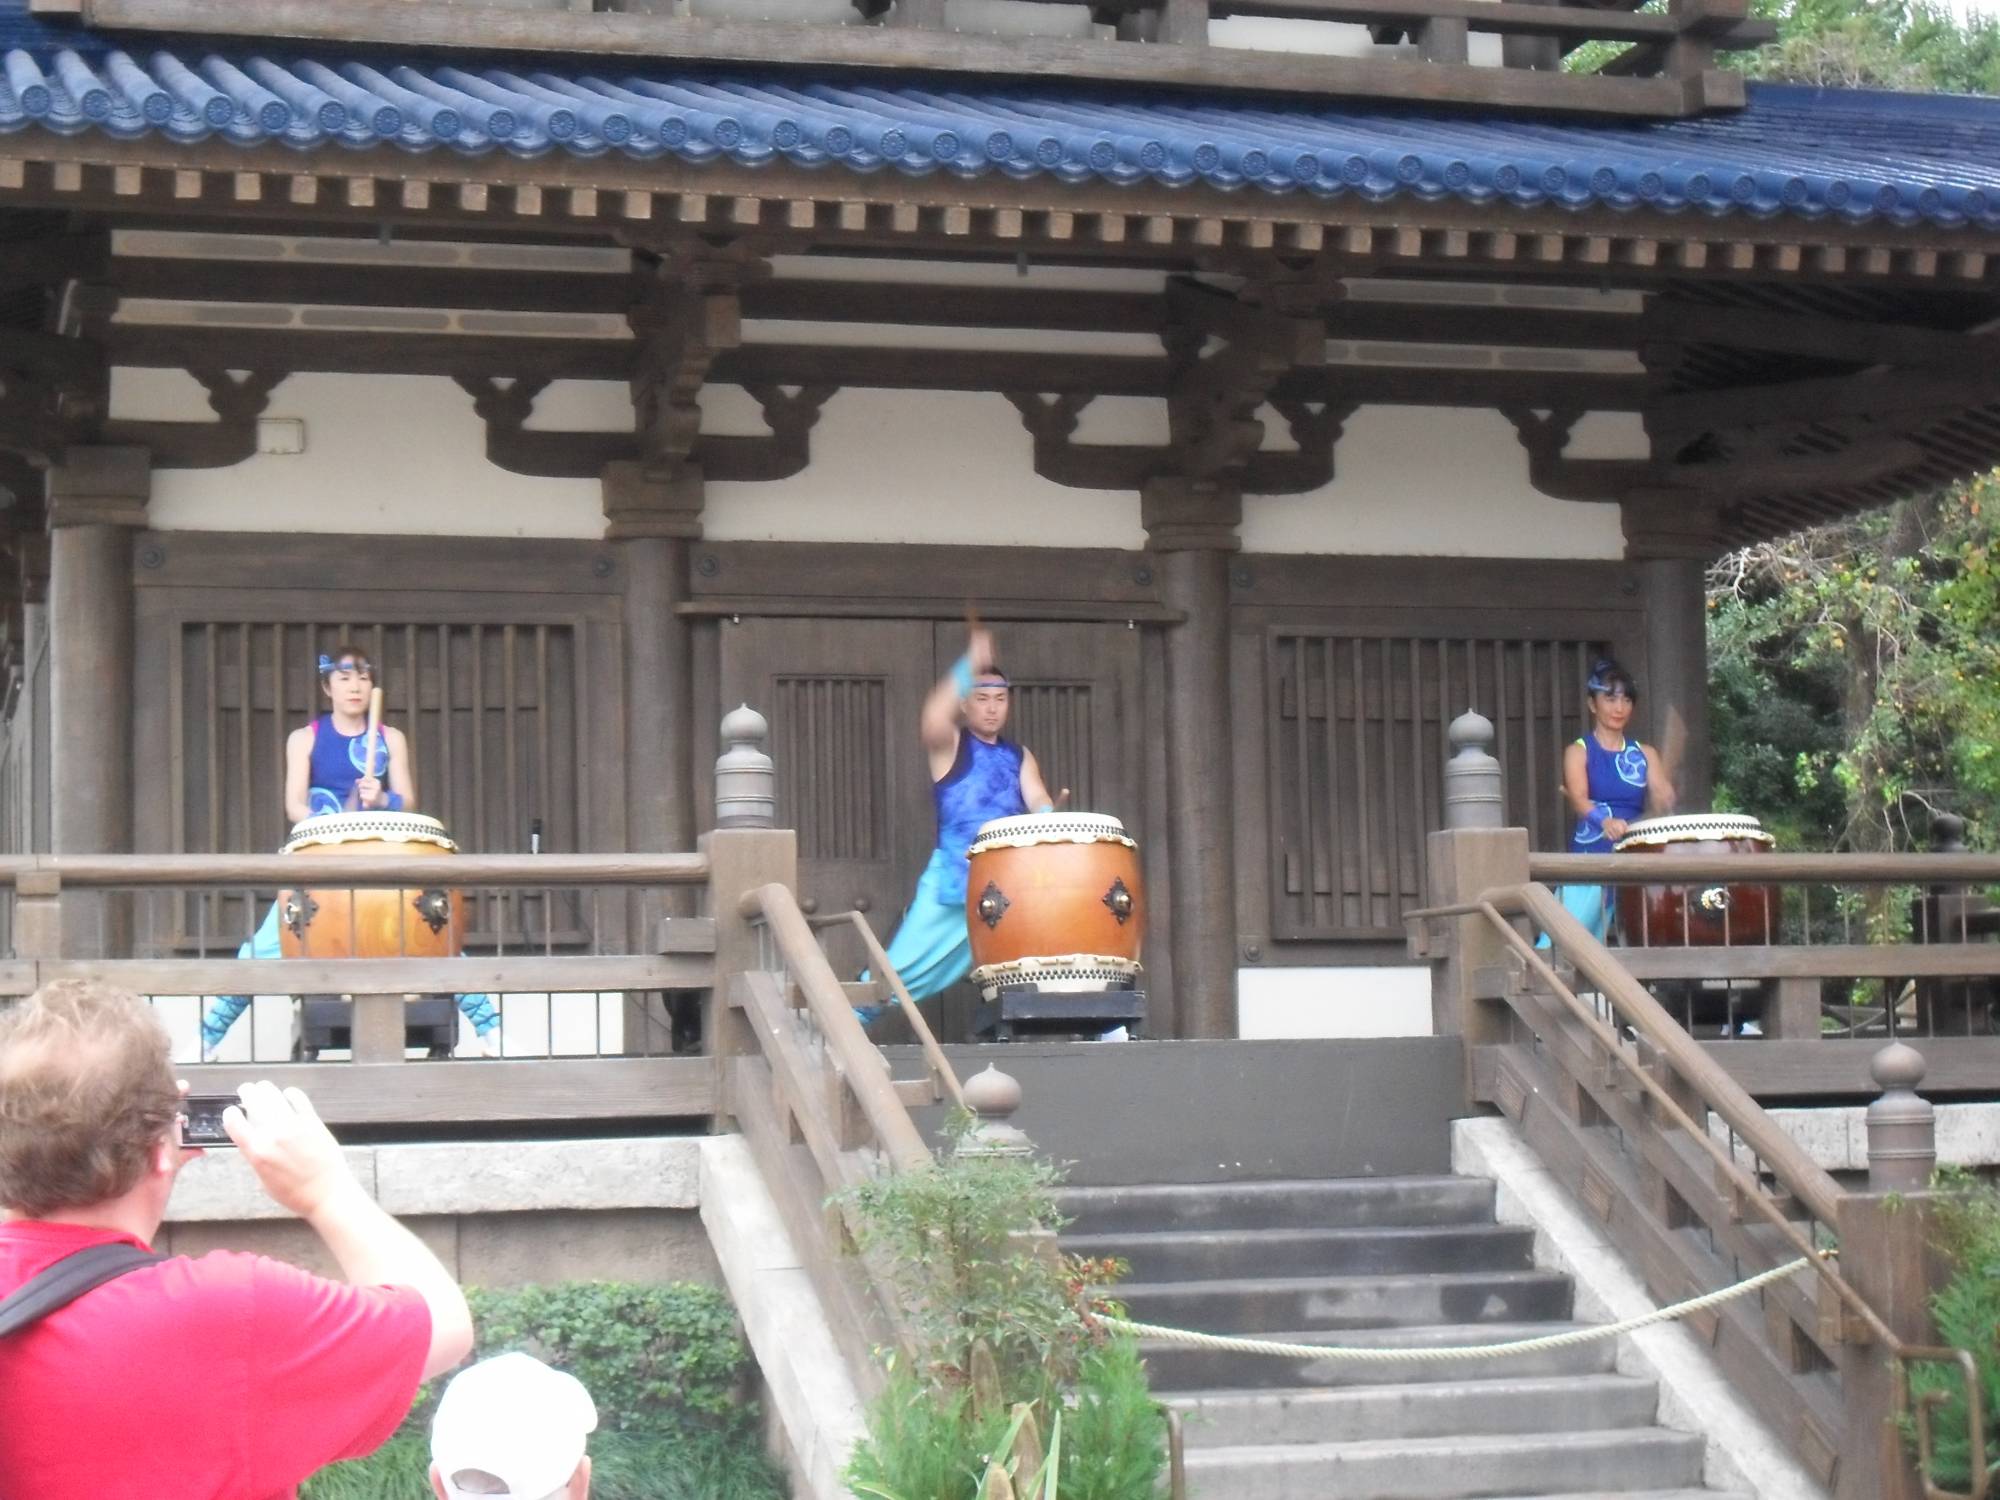 Drummers in Japan